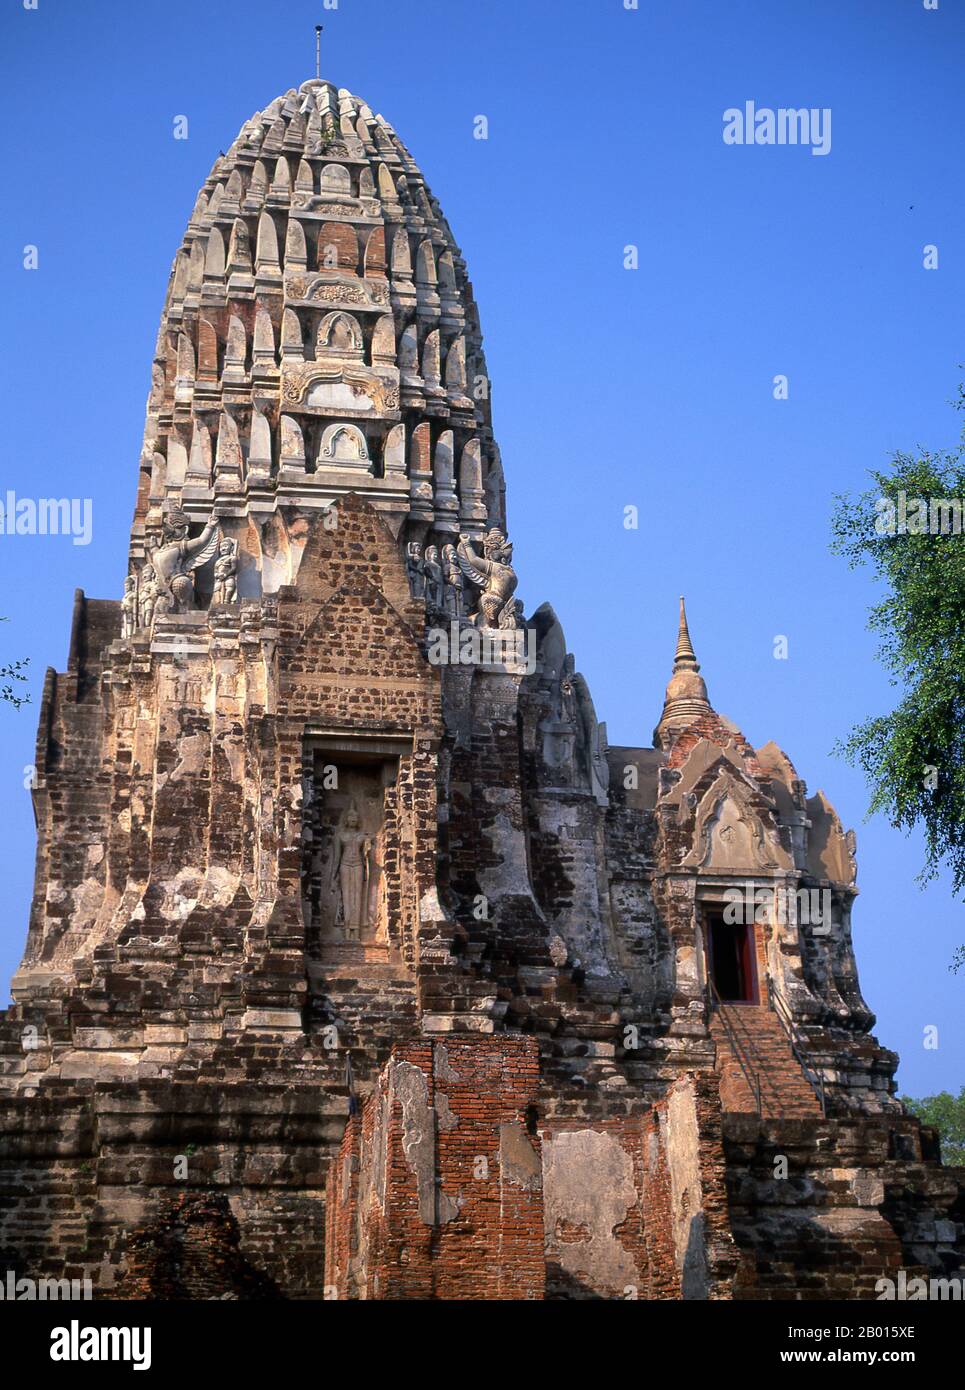 Thailandia: Il ben conservato prang in stile Khmer a Wat Ratburana, Ayutthaya Historical Park. Wat Ratburana (Ratchaburana) fu costruito nel 1424 durante il regno del re Borom Rachathirat II (Borommarachathirat II). Ayutthaya (Ayudhya) era un regno siamese che esisteva dal 1351 al 1767. Ayutthaya era amichevole verso i commercianti stranieri, compreso il cinese, vietnamita (Annamese), indiani, giapponesi e persiani, E poi i portoghesi, spagnoli, olandesi e francesi, permettendo loro di creare villaggi fuori dalle mura della città. Foto Stock